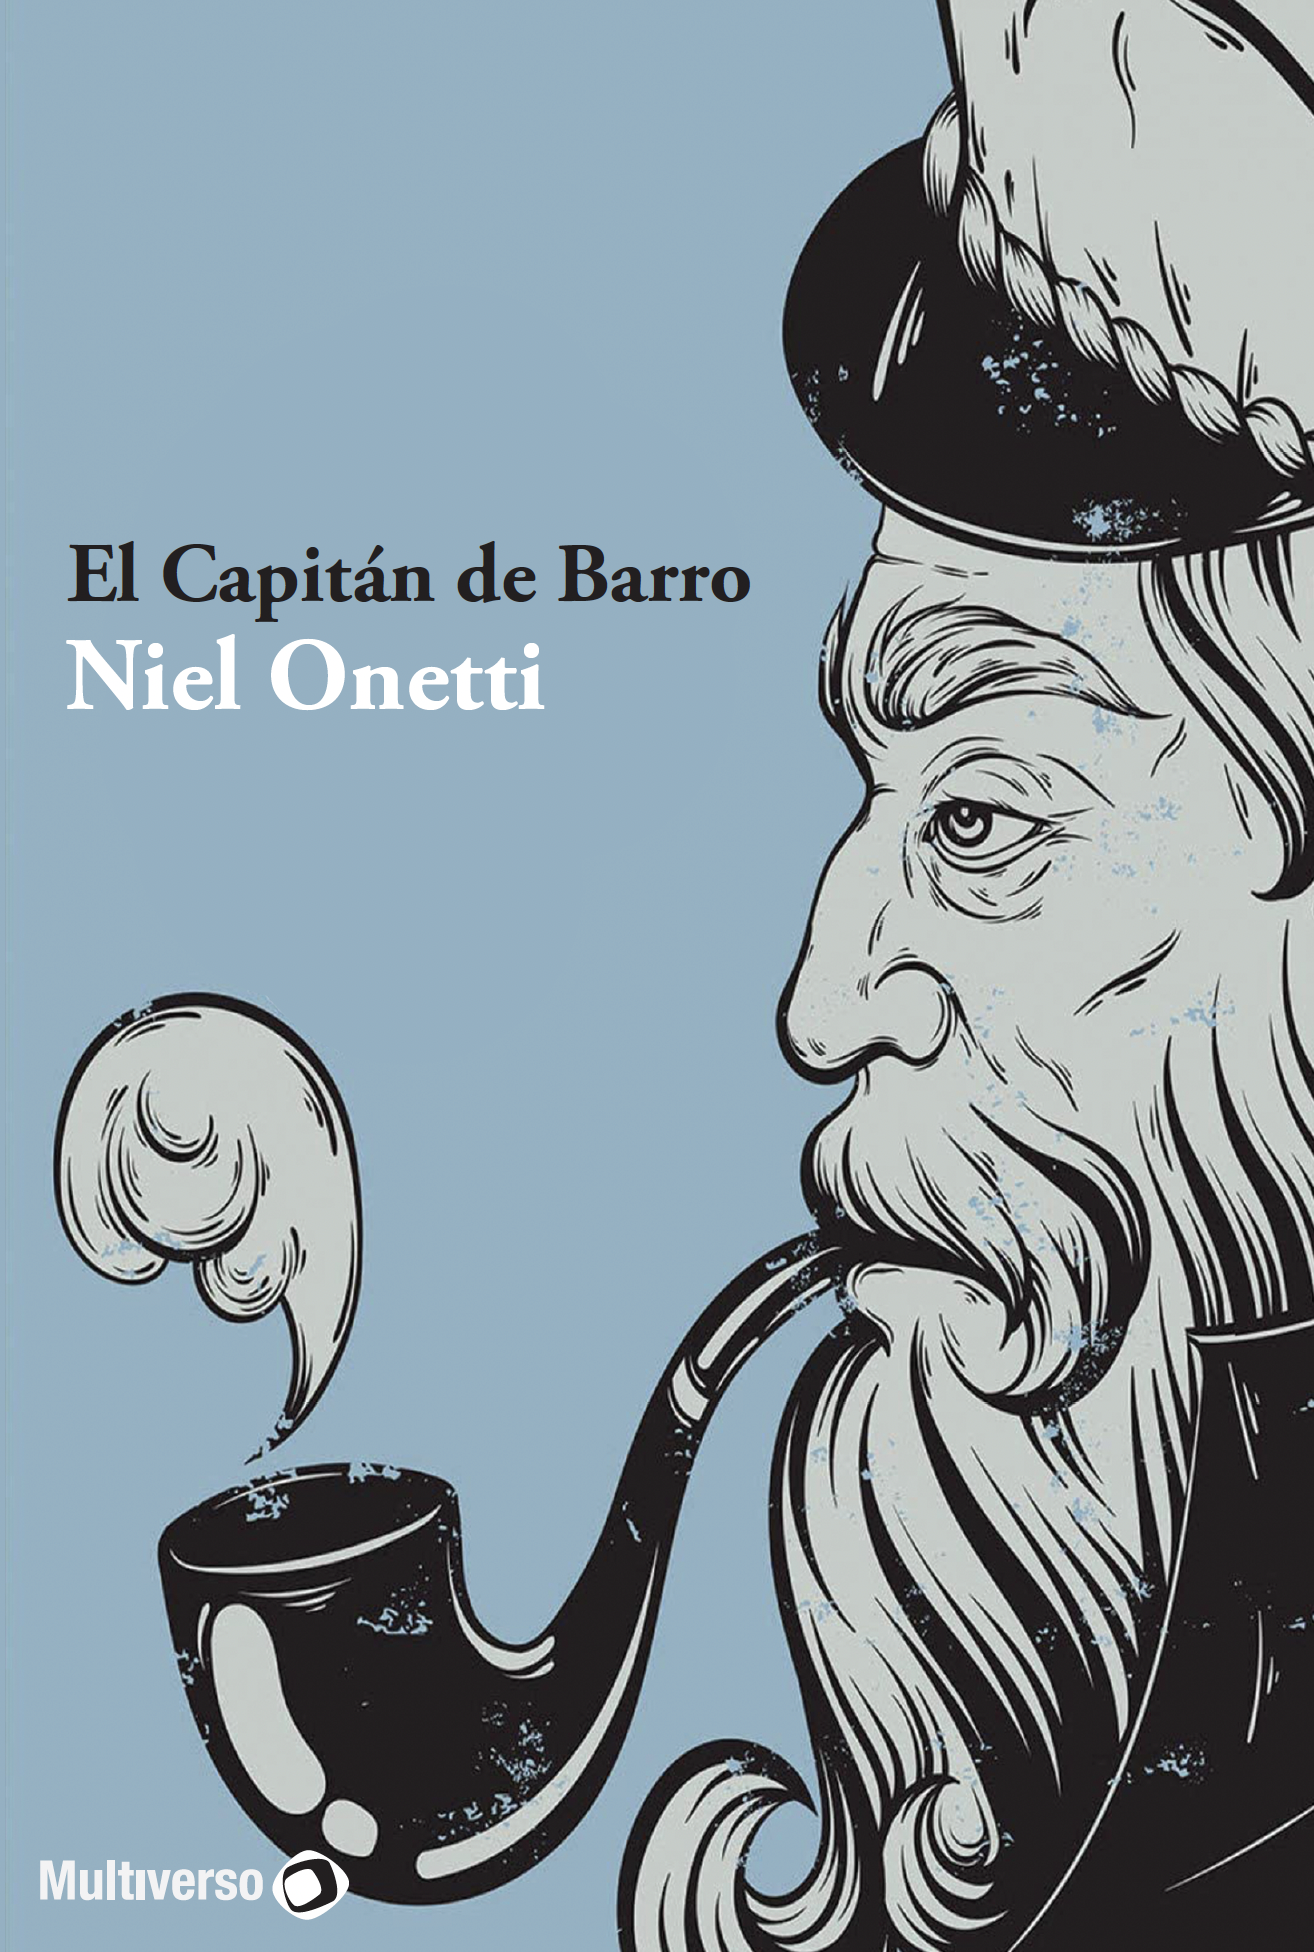 El Capitán Barro